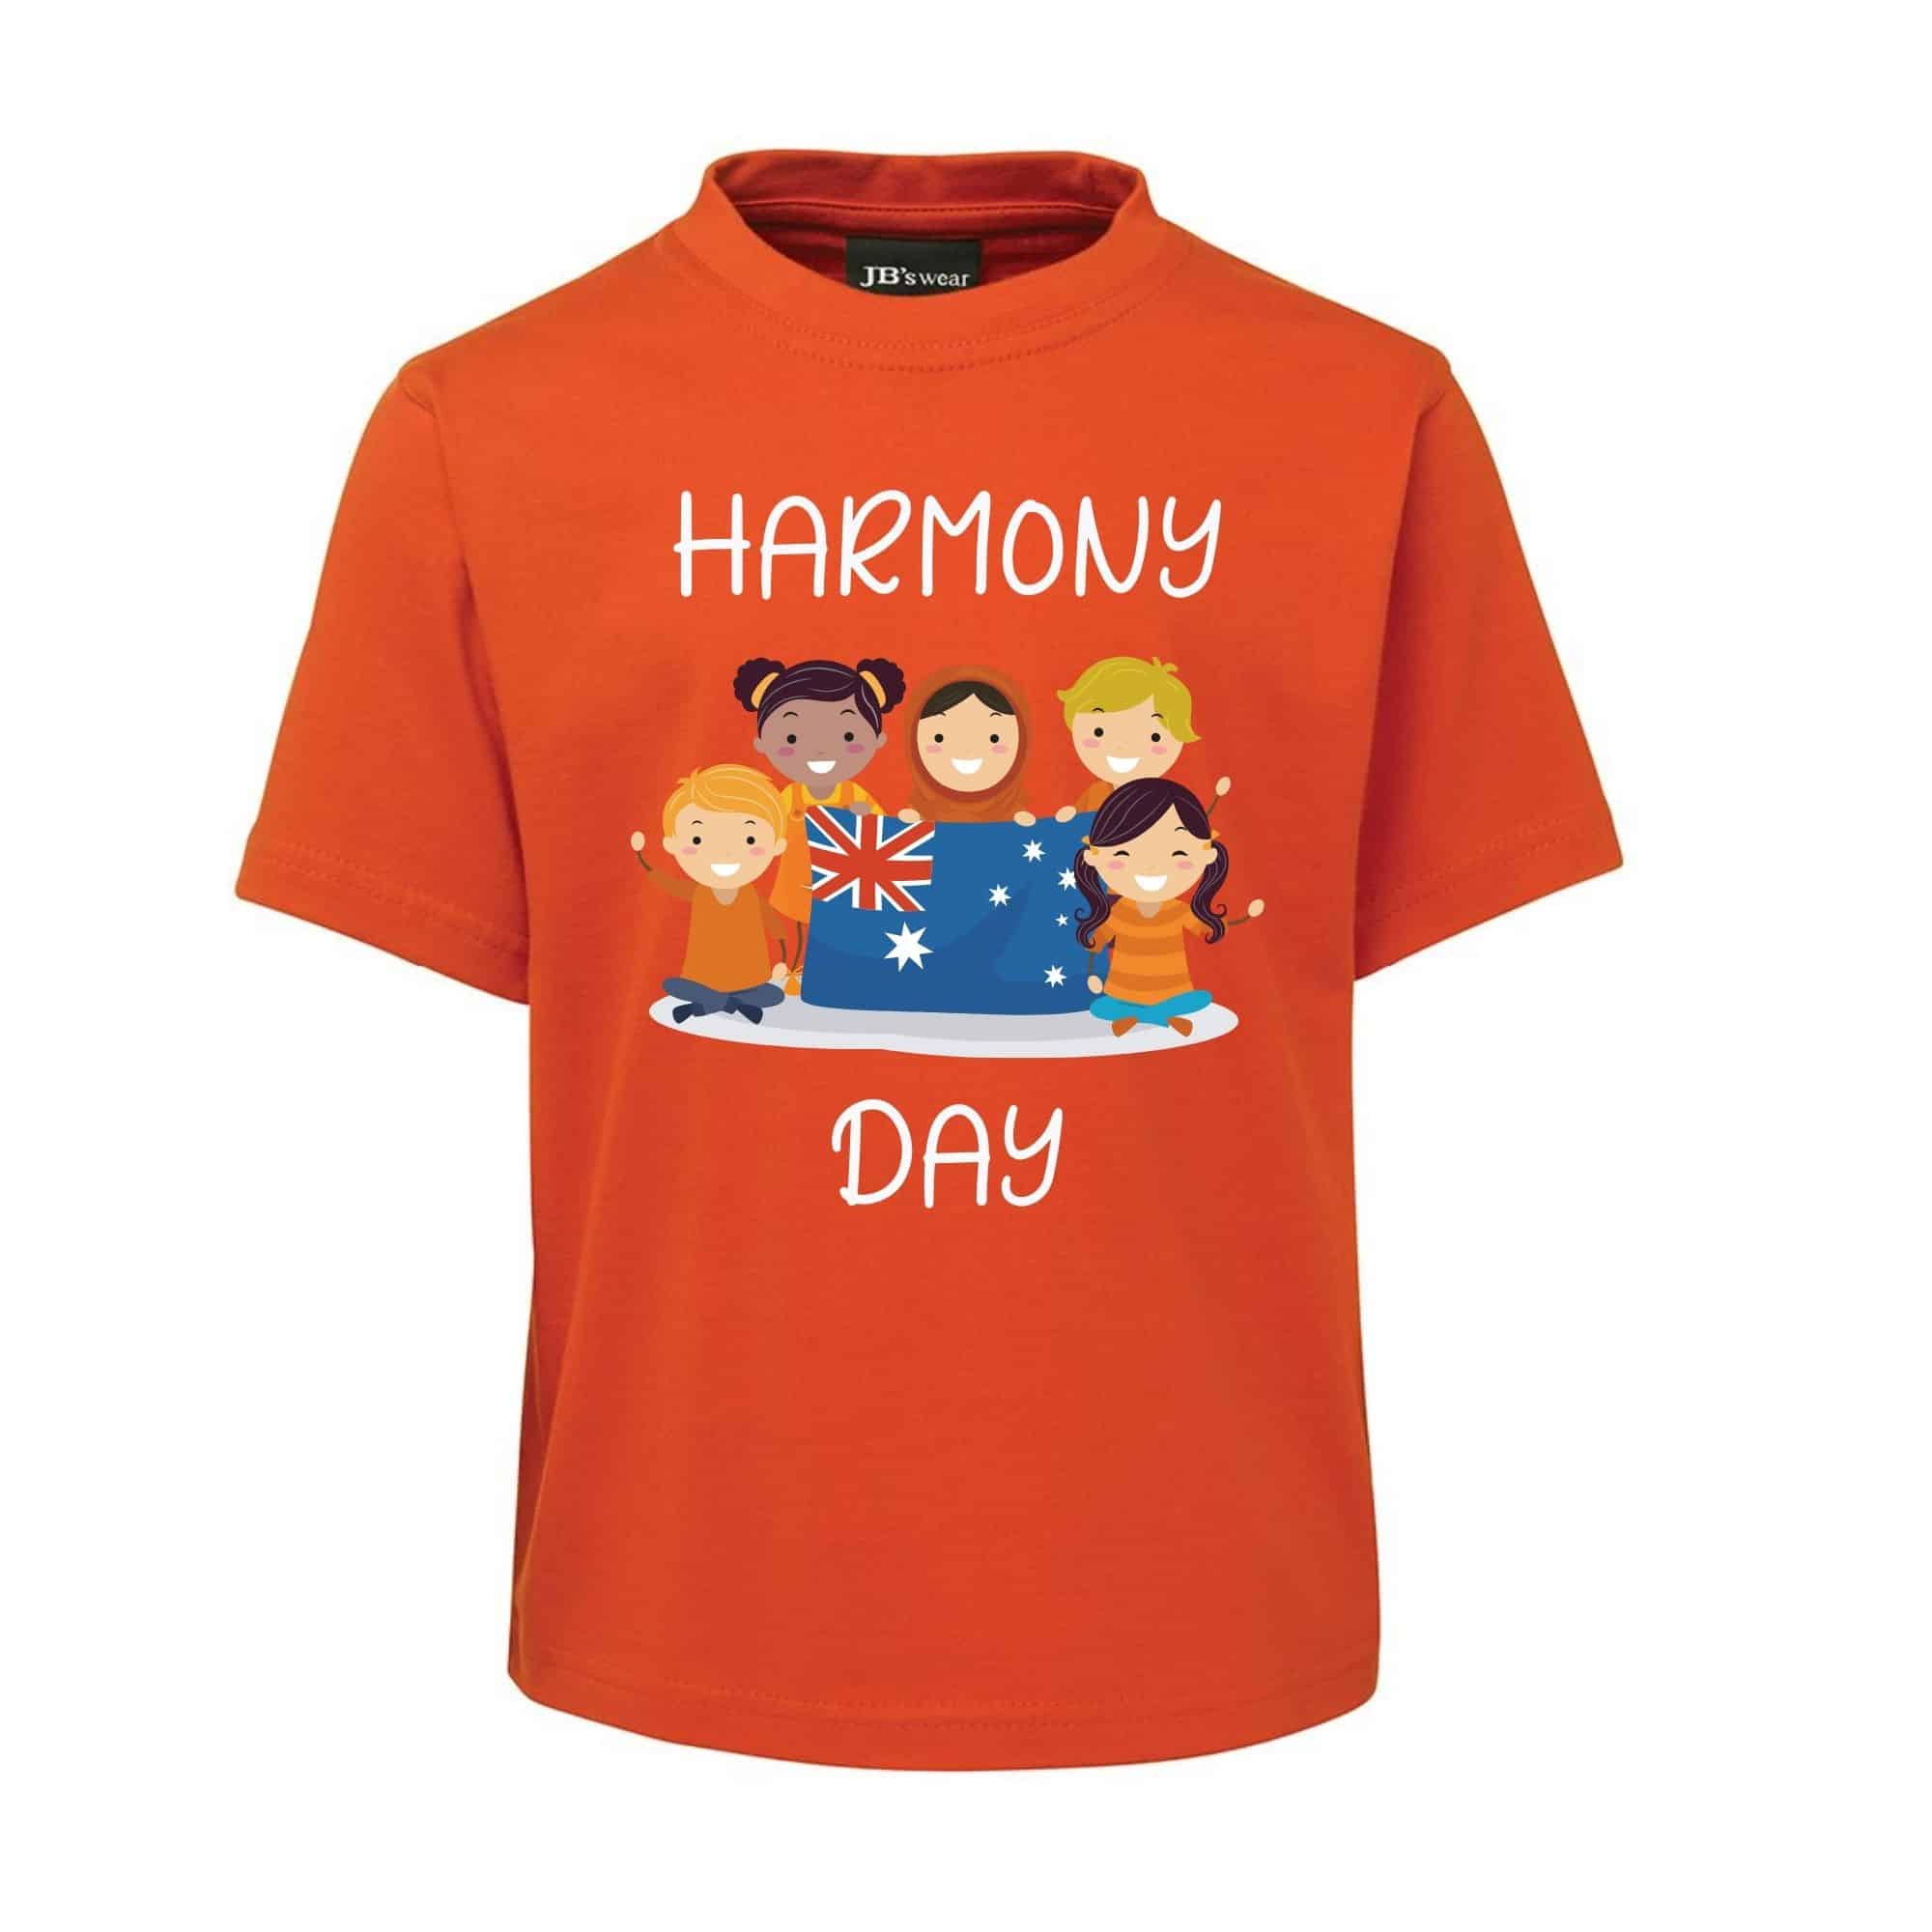 Harmony-Day-A